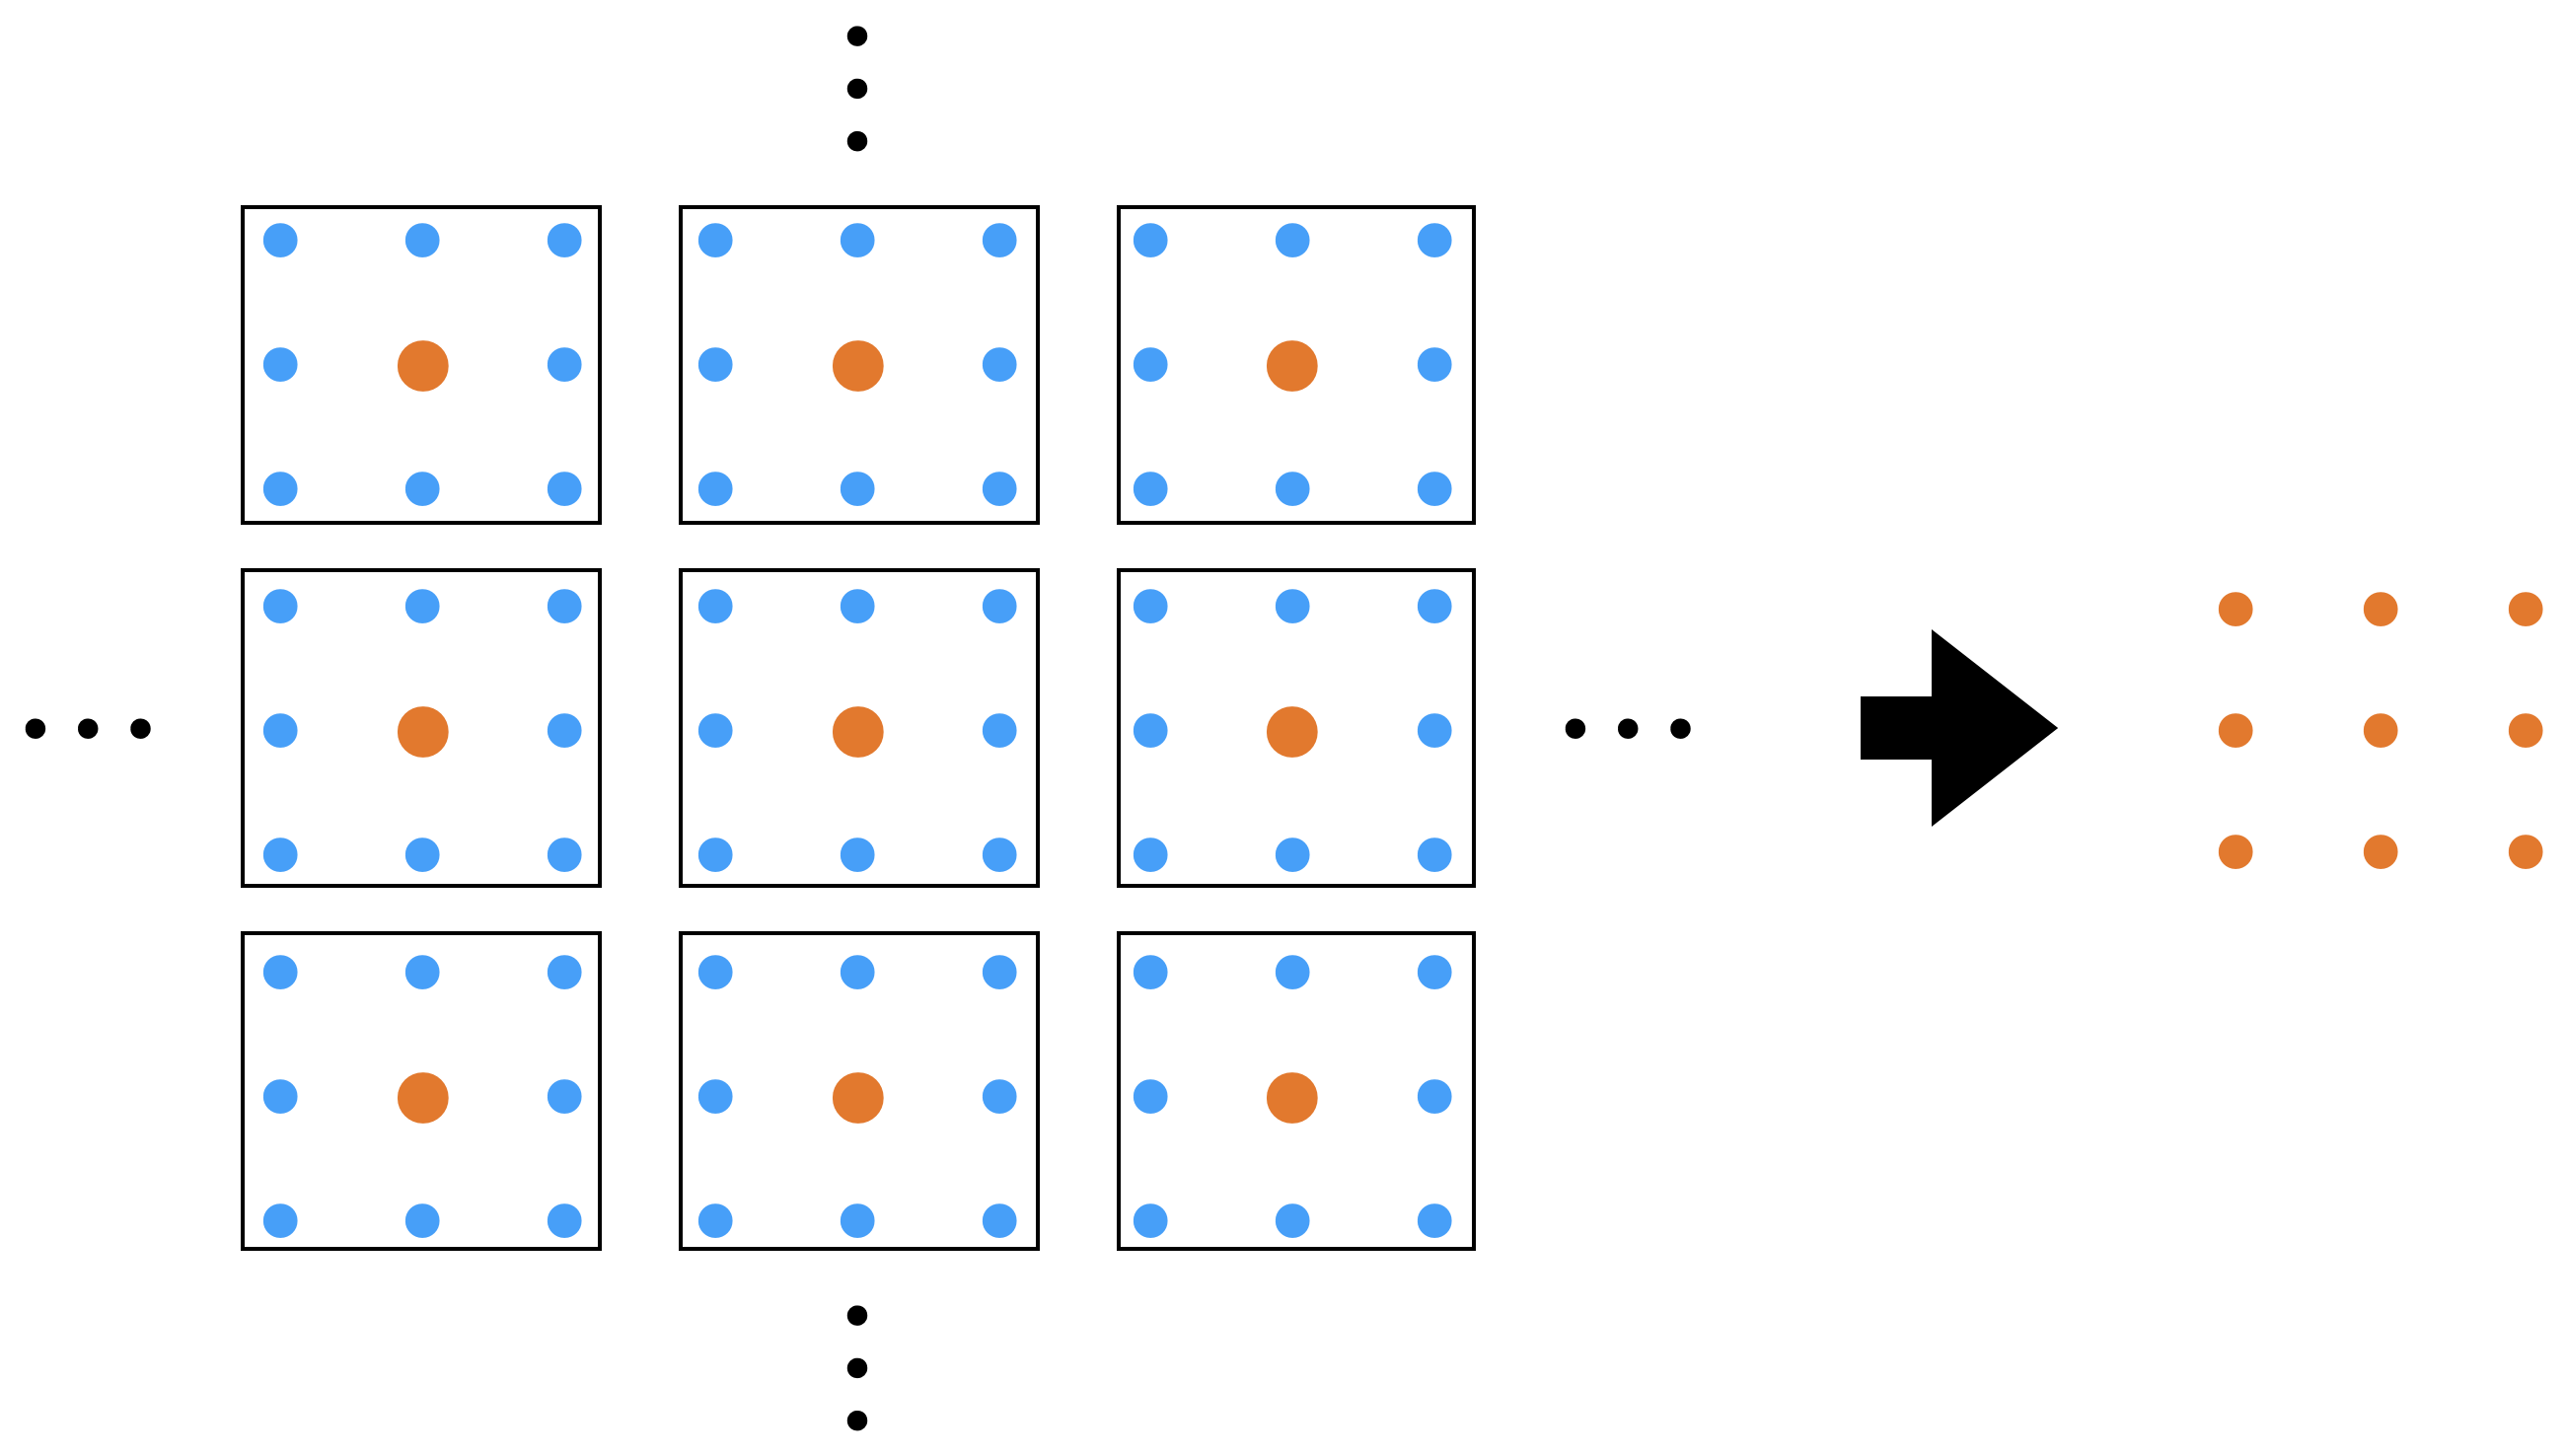 ブロックスピン変換。左図の黒い四角の中の自由度を平均し、右図の新たな自由度を作る。